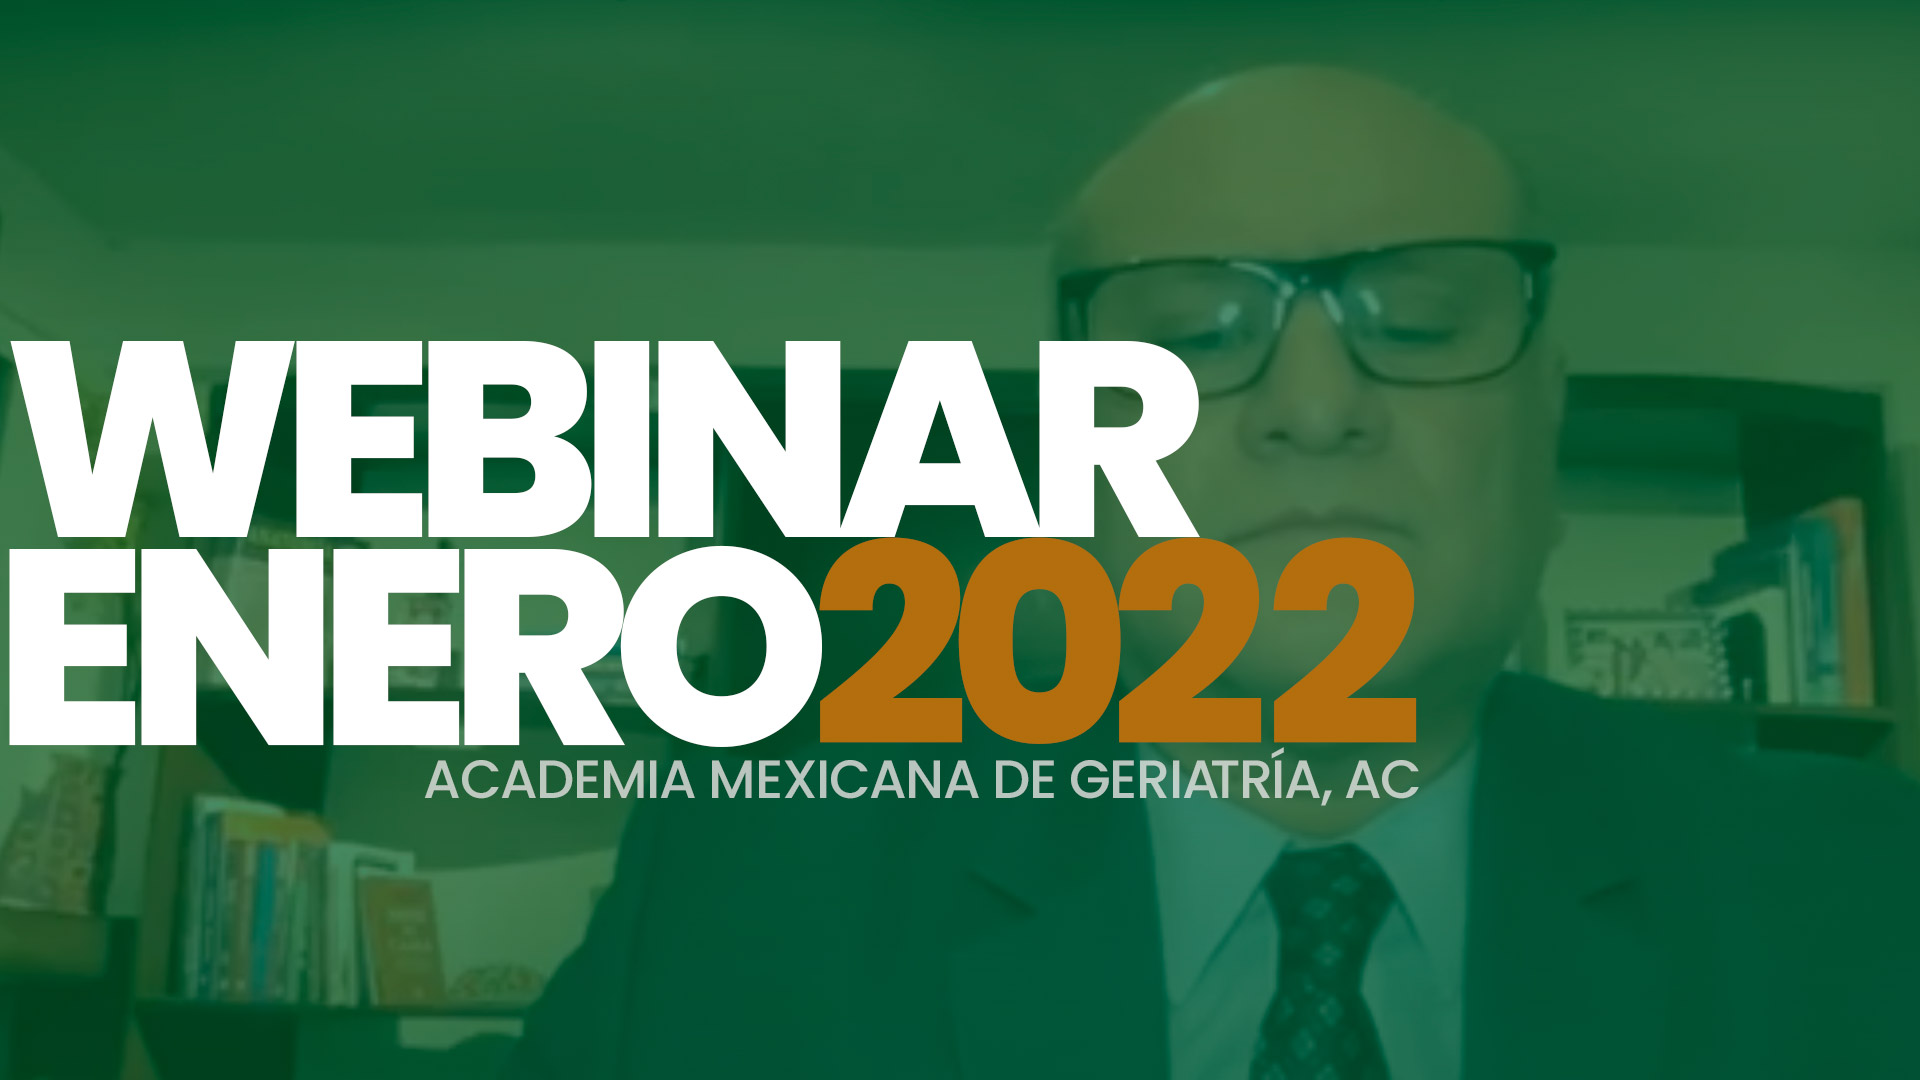 Sesiones Académicas - Academia Mexicana de Geriatría AC - Dr. Alberto José Mimenza Alvarado